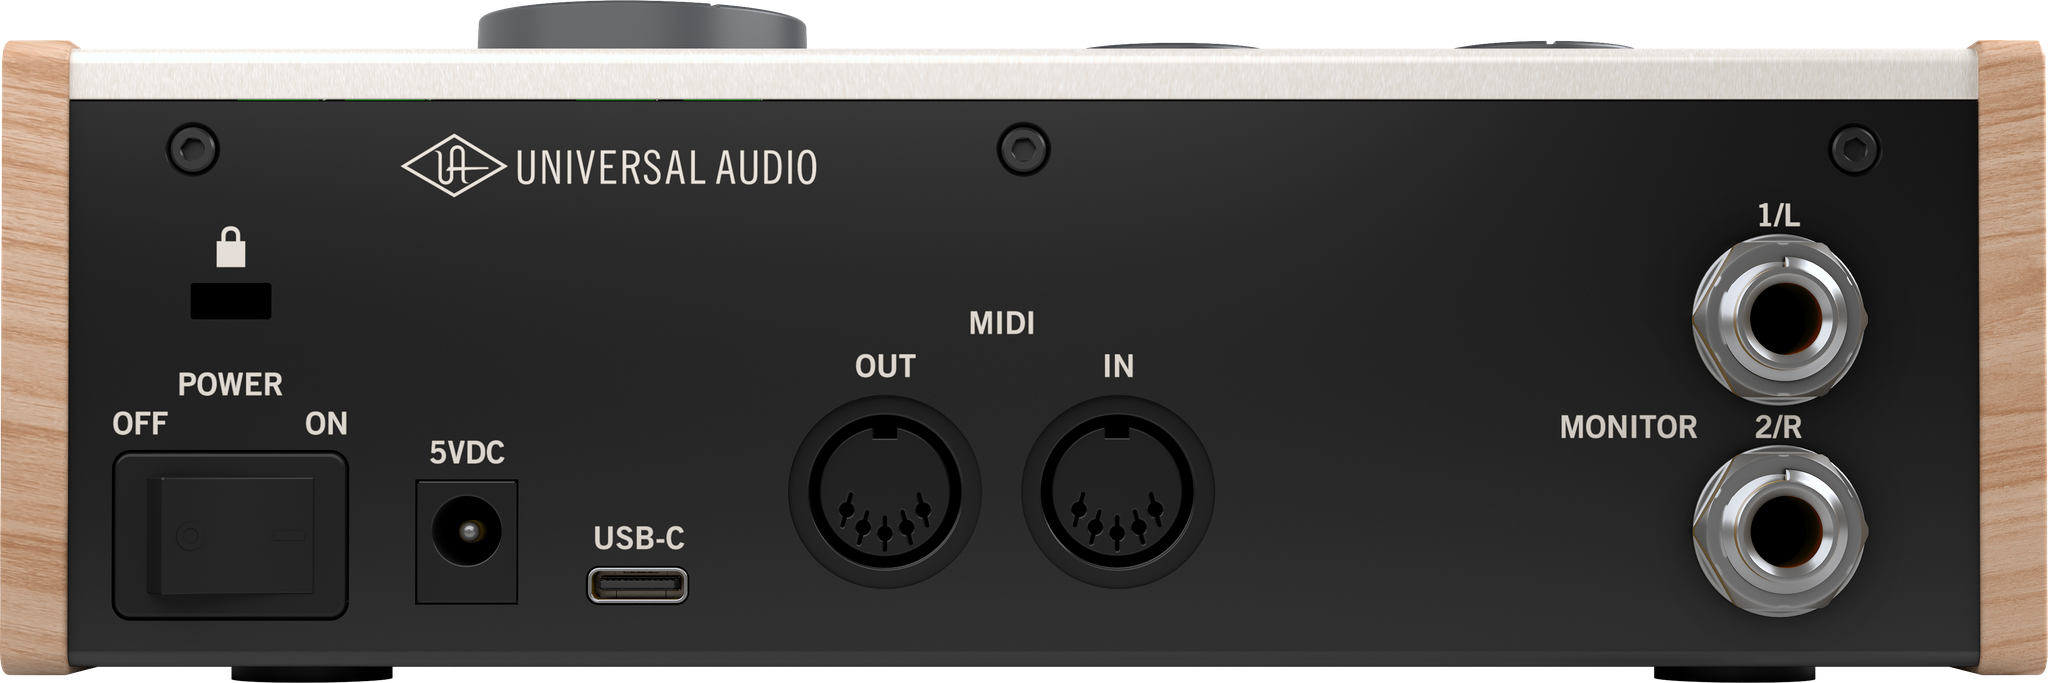 Universal Audio Volt 276. Universal Audio Volt 2. Universal Audio Volt 176. UAD Volt 276. Volt звуковая